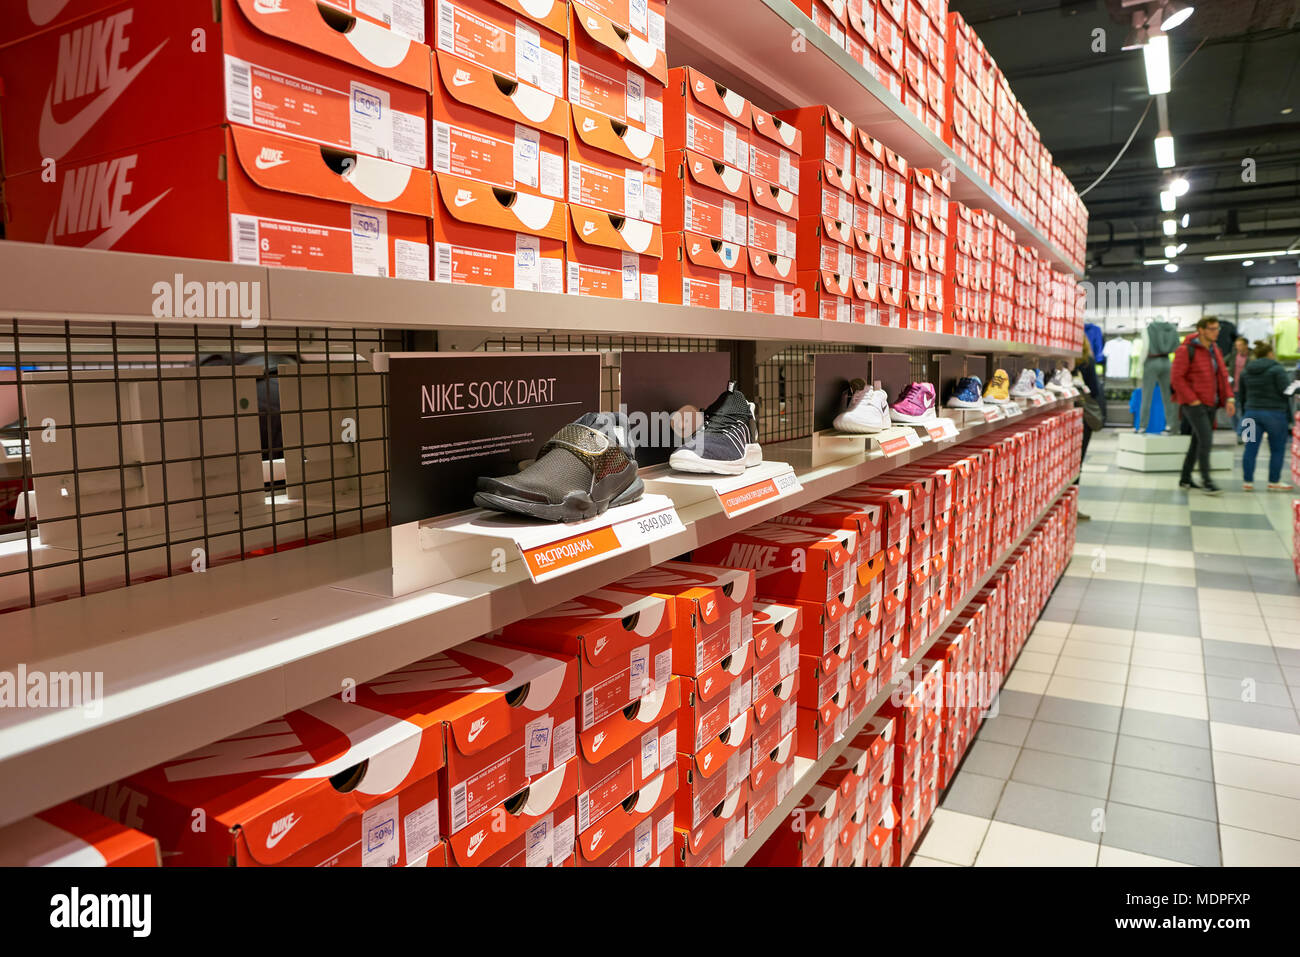 Nike factory store fotografías e imágenes de alta resolución - Página 2 -  Alamy